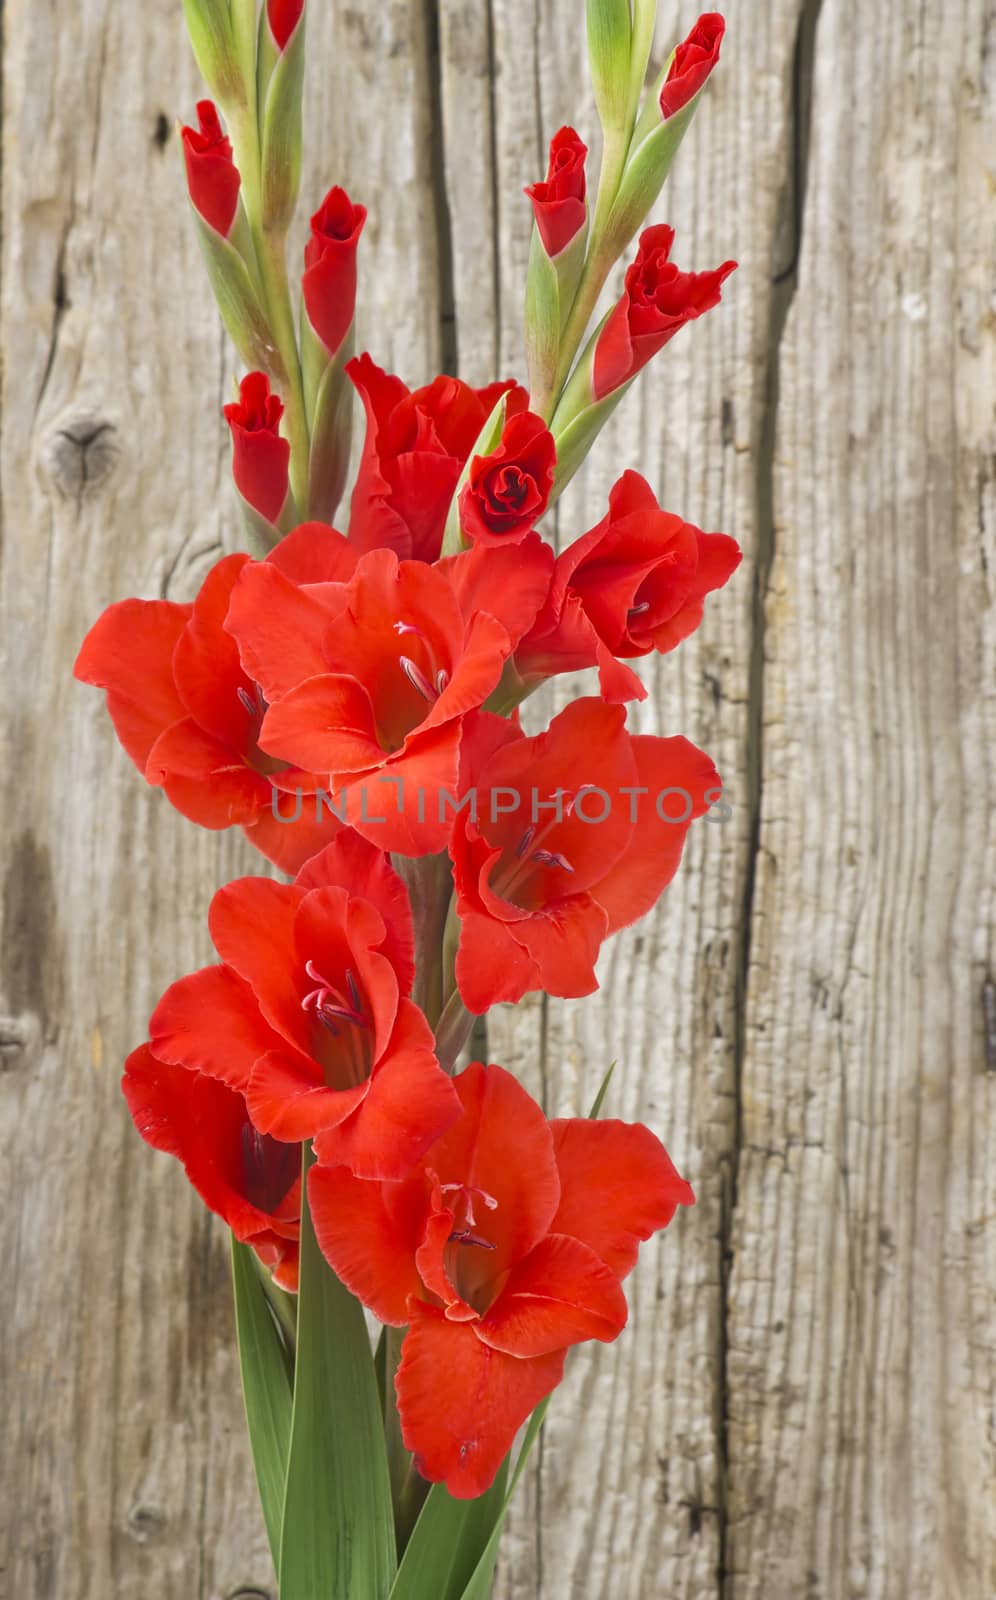 red gladiolus flowers by miradrozdowski